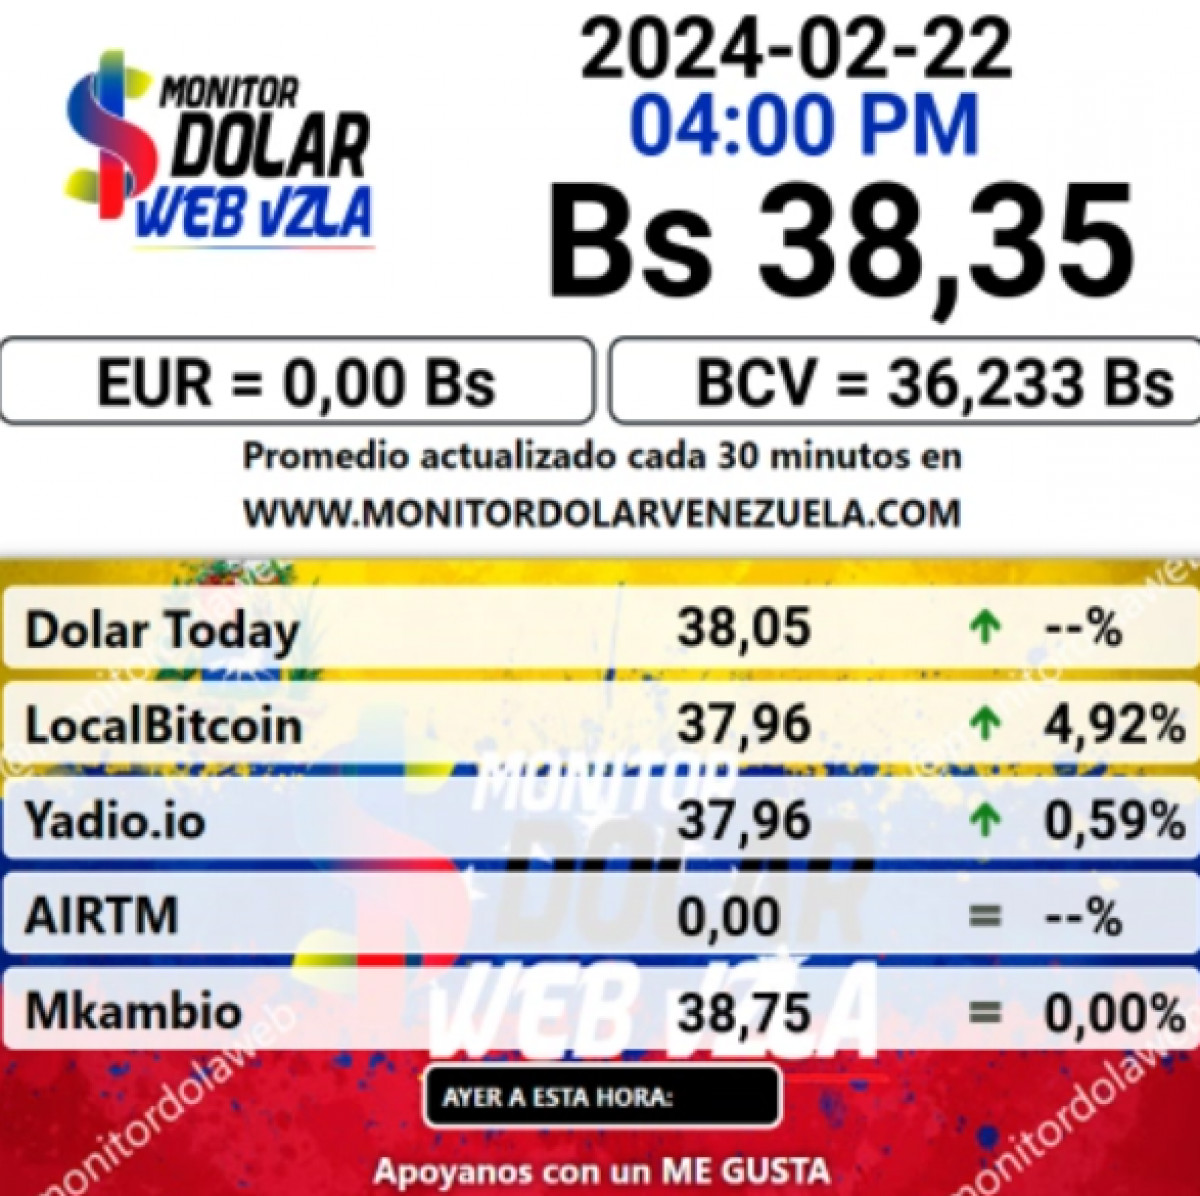 dolartoday en venezuela precio del dolar este jueves 22 de febrero de 2024 laverdaddemonagas.com monitorwewew